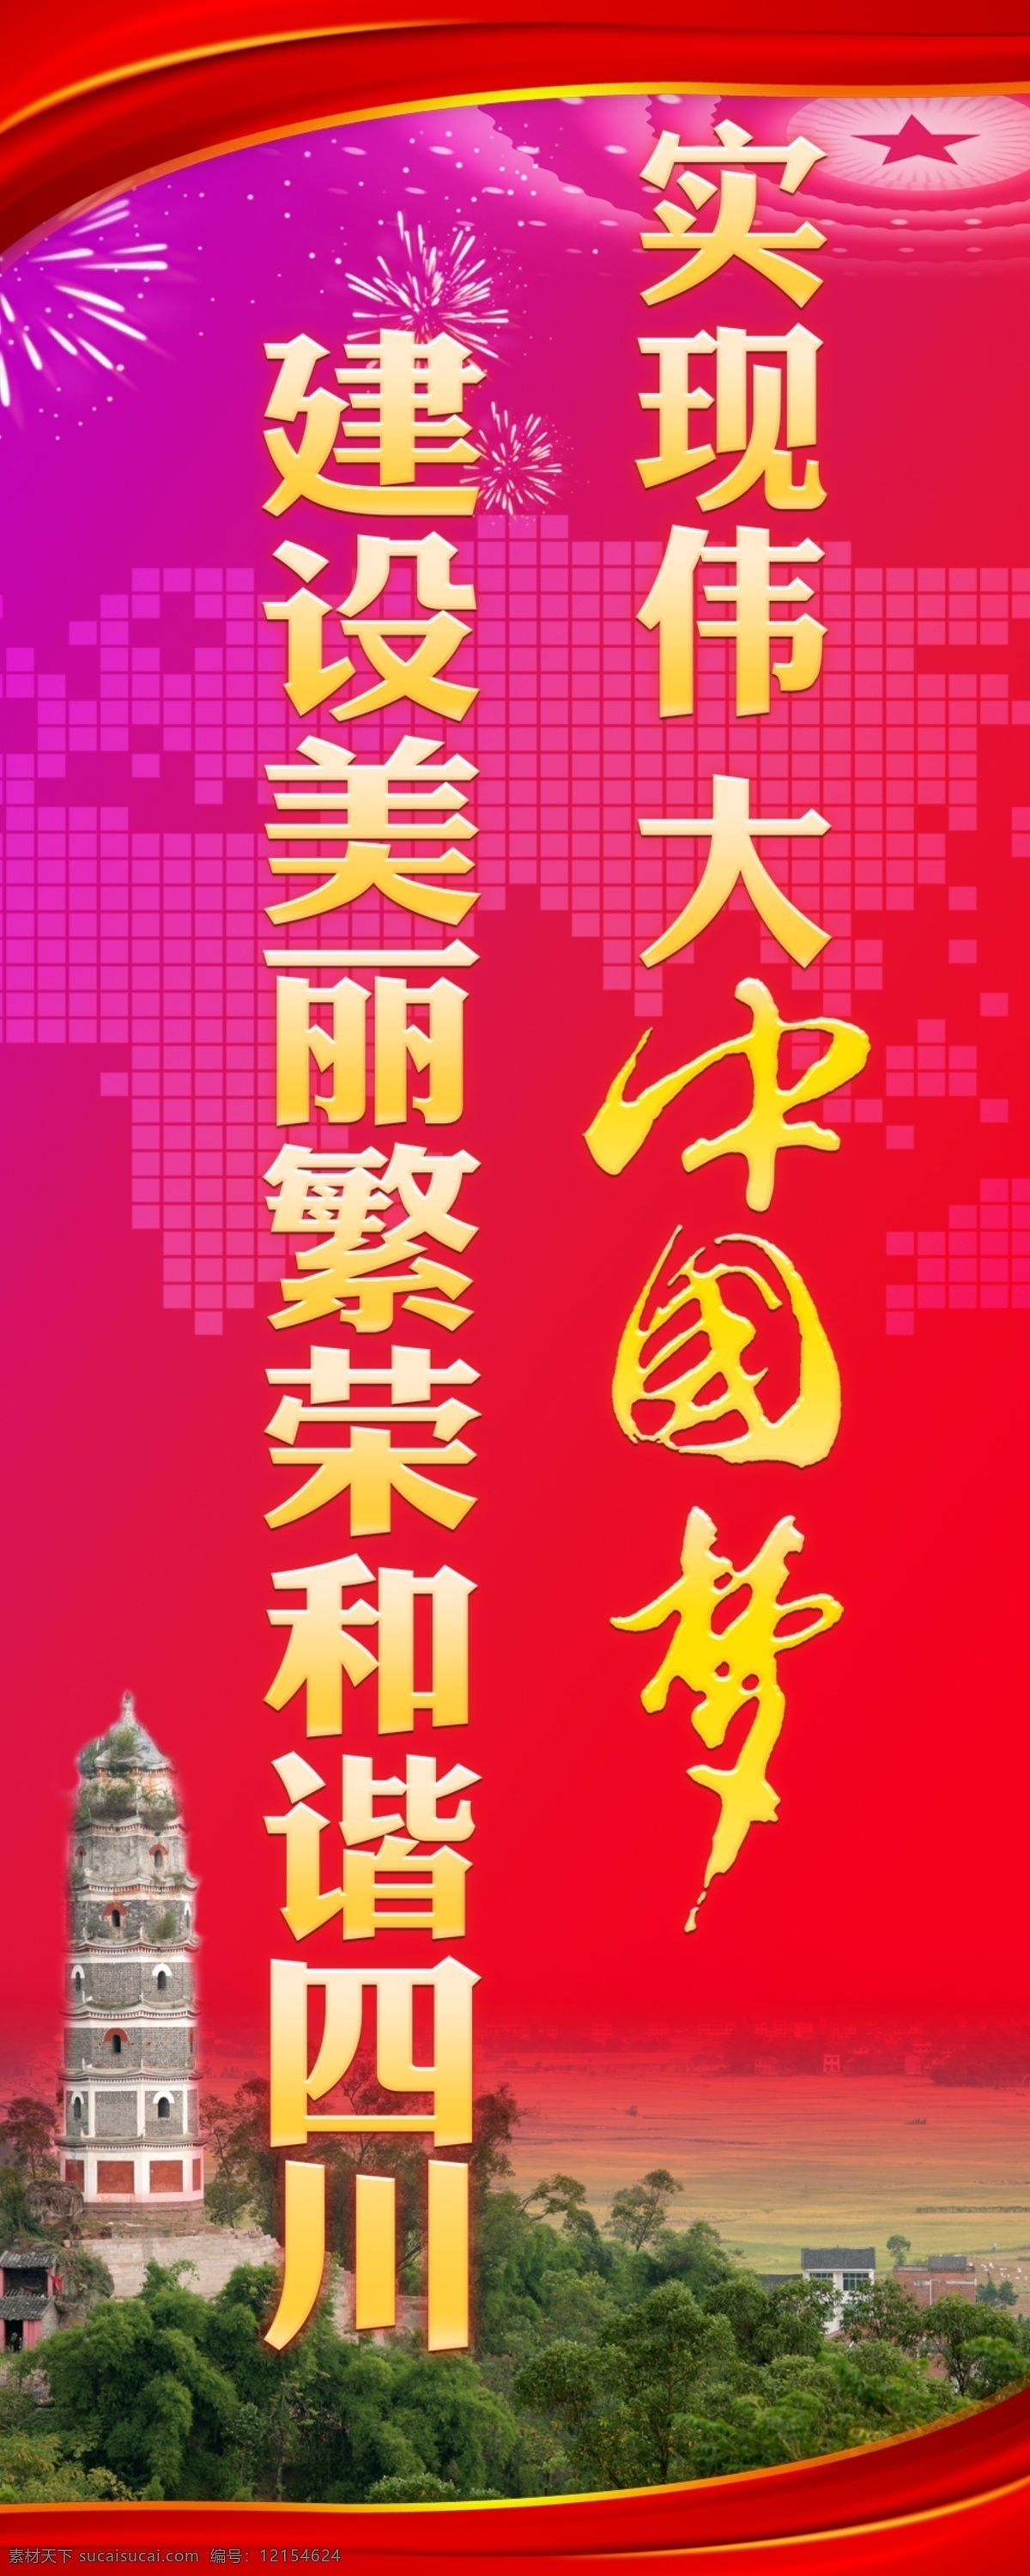 广告设计模板 源文件 政府 中国 中国梦 中国梦海报 梦 海报 模板下载 世界梦 四川梦 其他海报设计